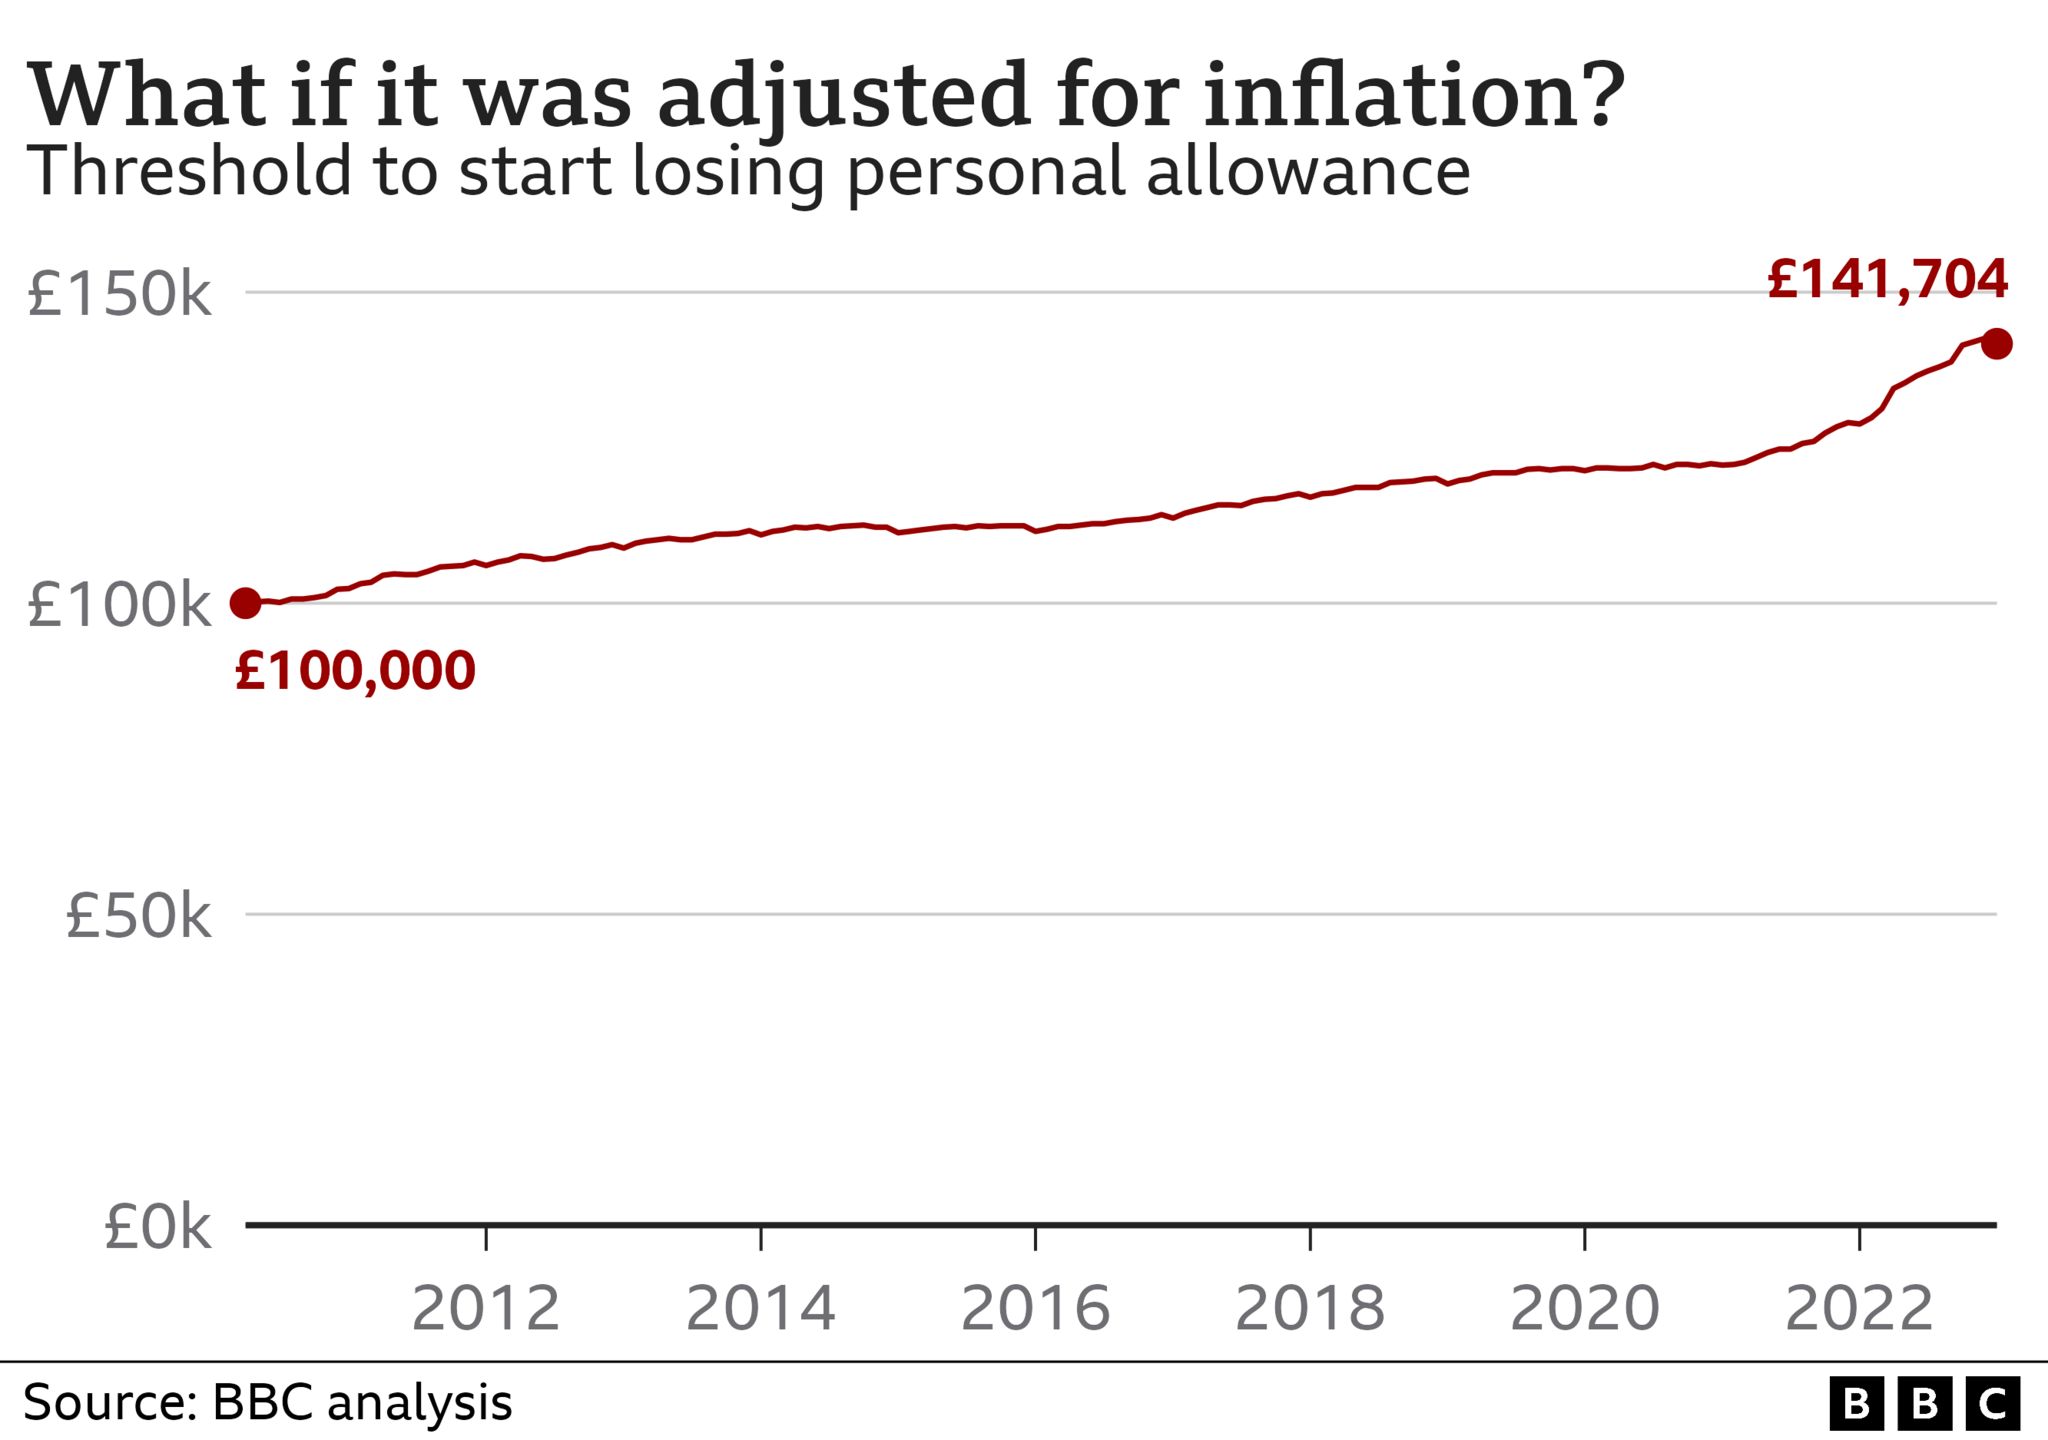 Диаграмма, показывающая, что произошло бы, если бы порог потери личного подоходного налога был скорректирован с учетом инфляции. Он изменится со 100 000 фунтов стерлингов до 141 704 фунтов стерлингов.